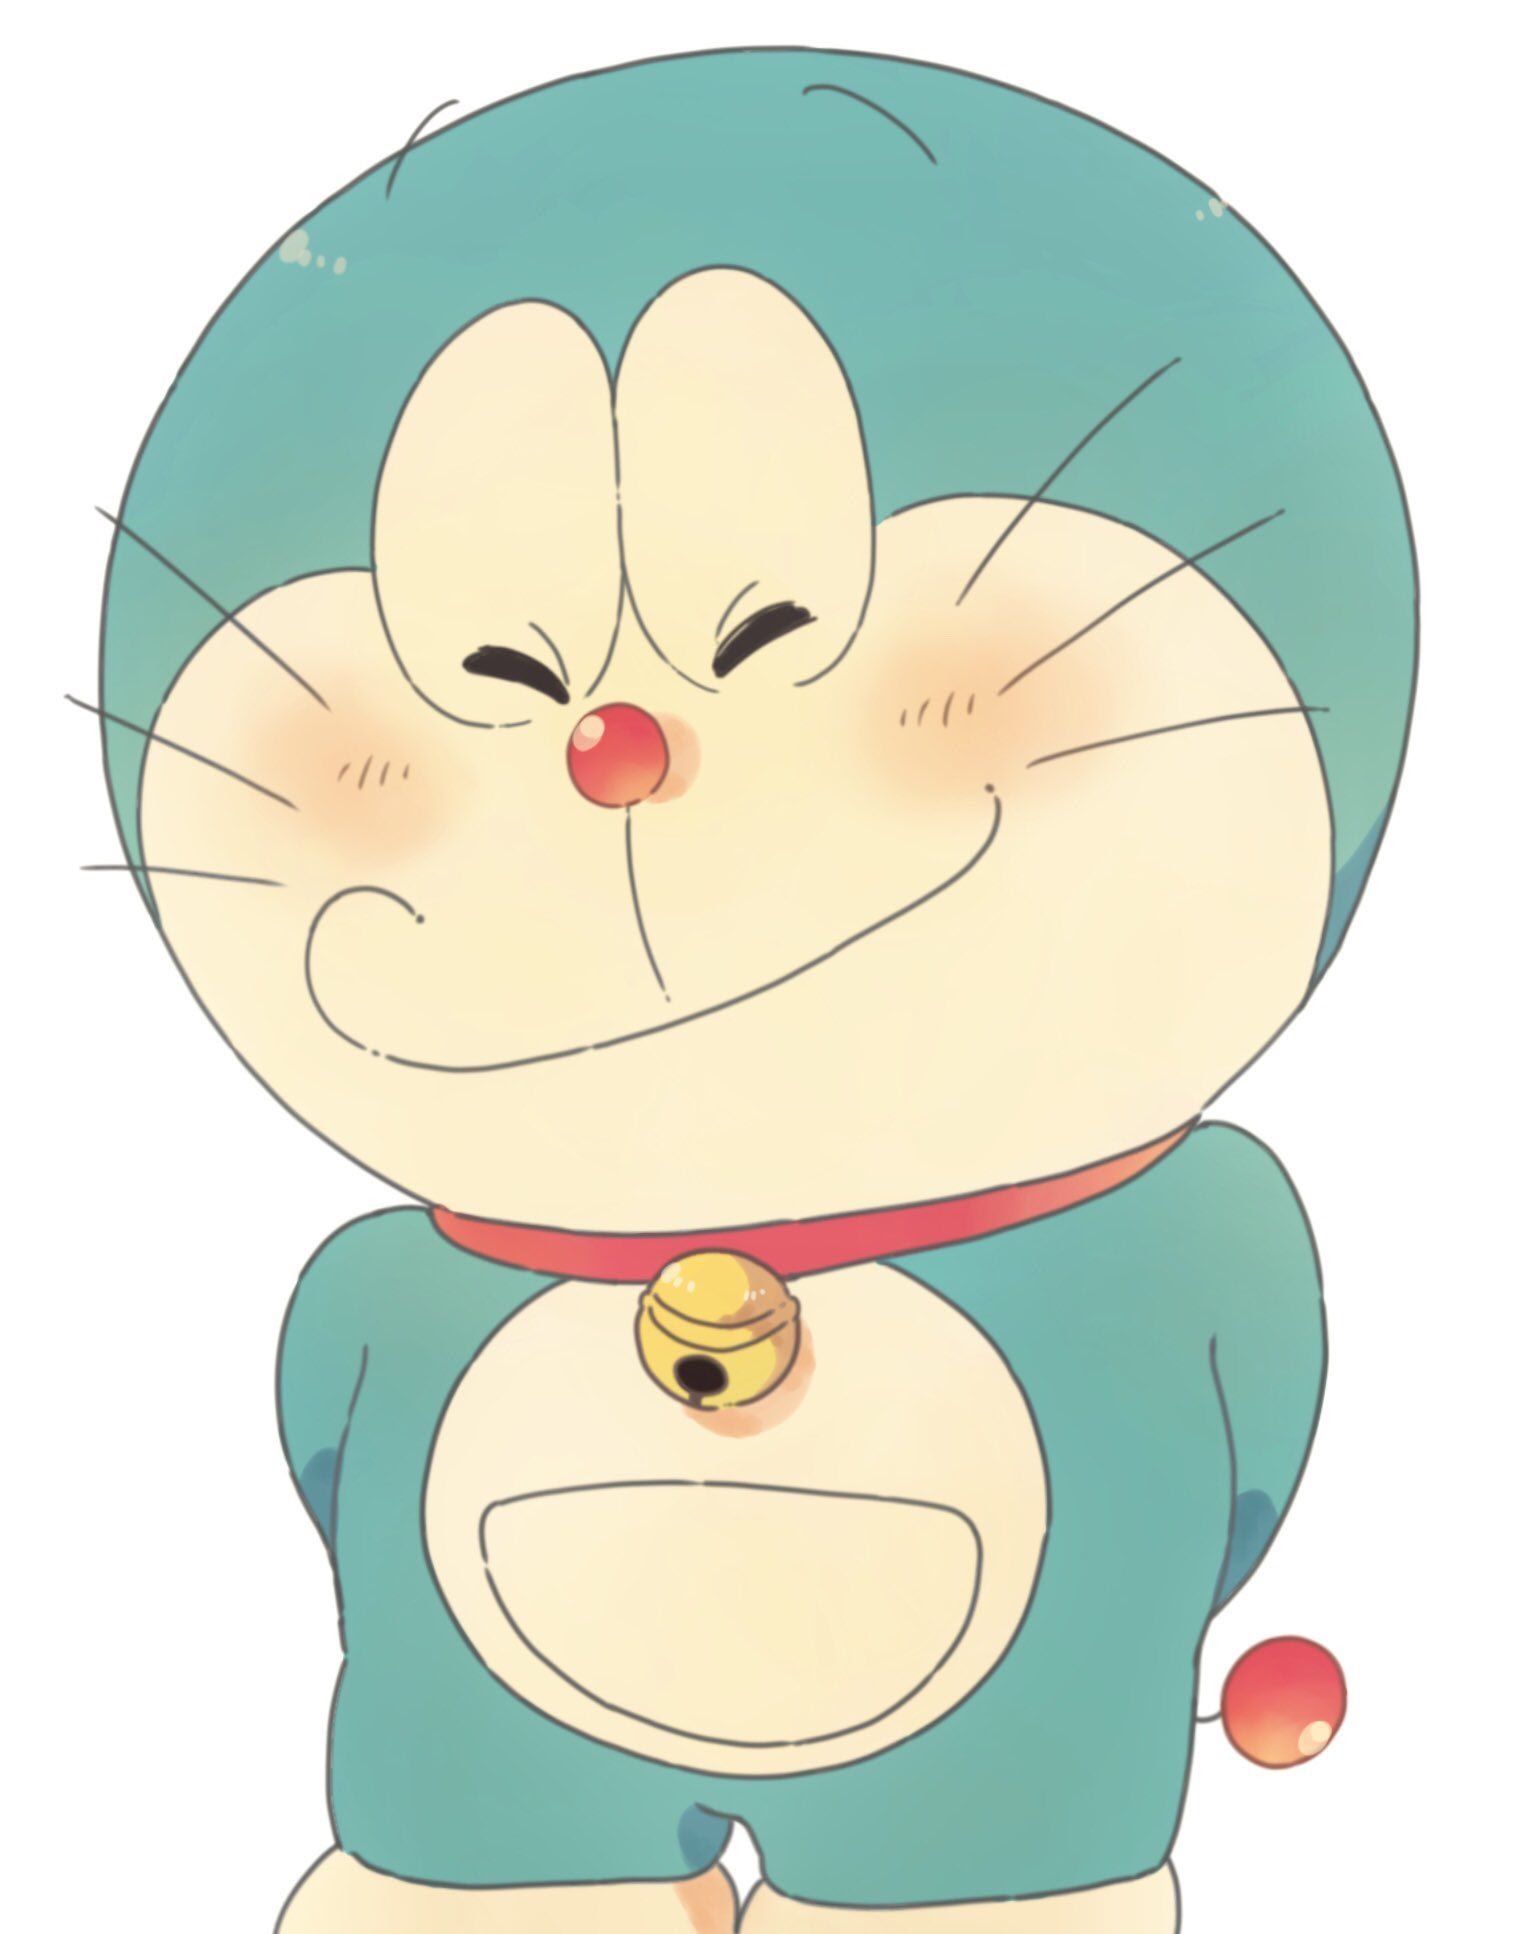 Doraemon là một trong những nhân vật mang tính biểu tượng của các cuộc thiện nguyện ở Nhật Bản. Ngoài trông của một chú mèo robot ngoài hành tinh, nhân vật này còn mang theo những sứ mệnh đầy ý nghĩa và thú vị. Click để khám phá những sự thật thú vị về Doraemon nhé!